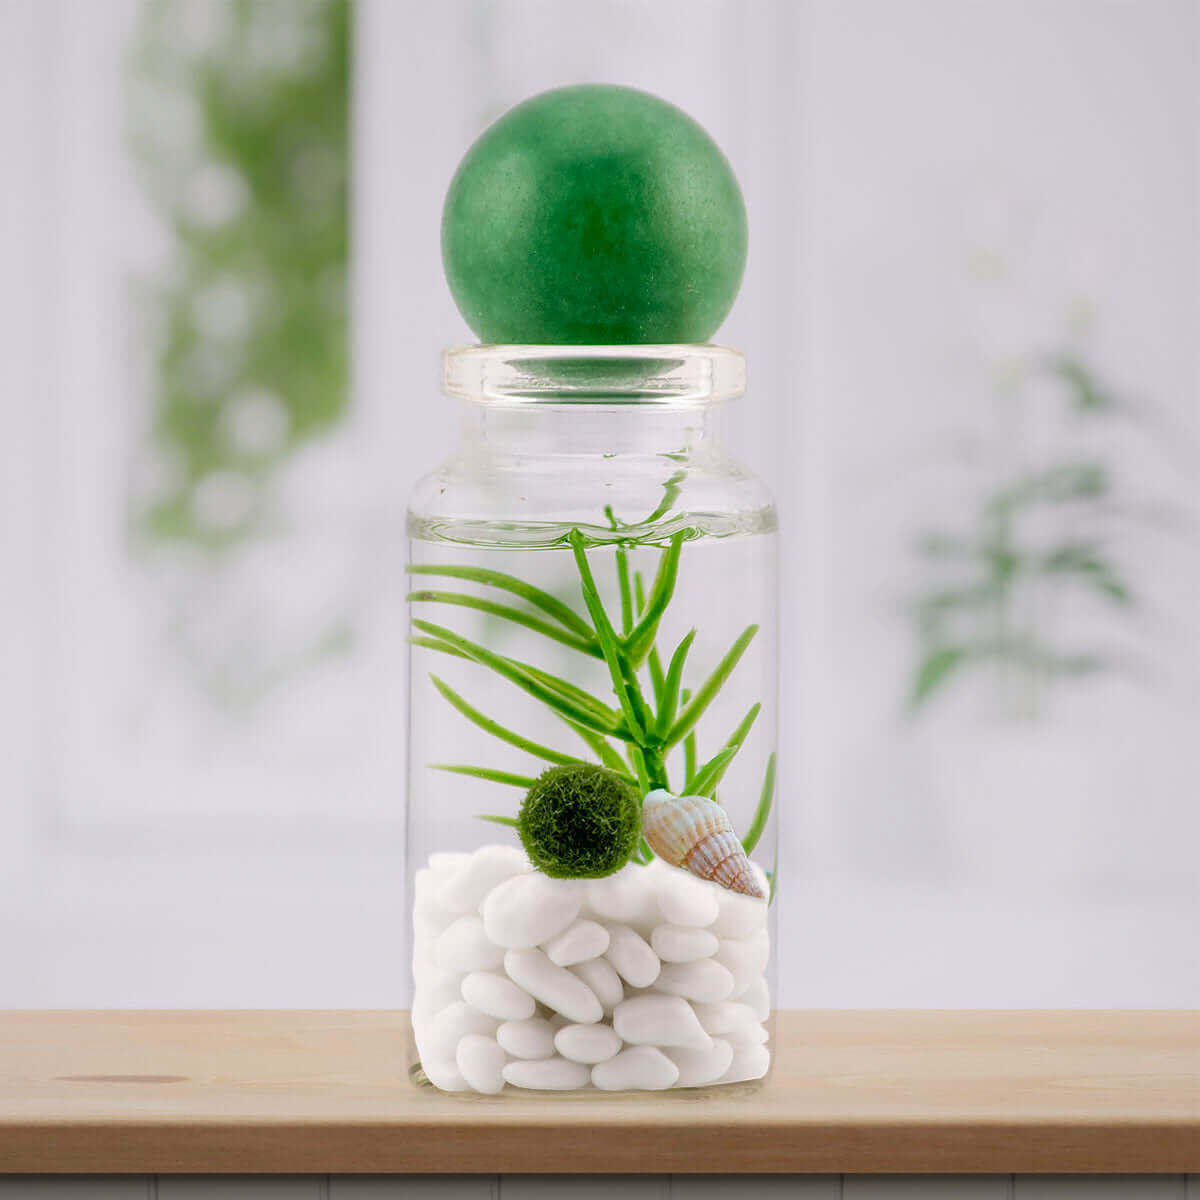 Green Aventurine sphere lending a touch of verdant luck to a moss ball terrarium.